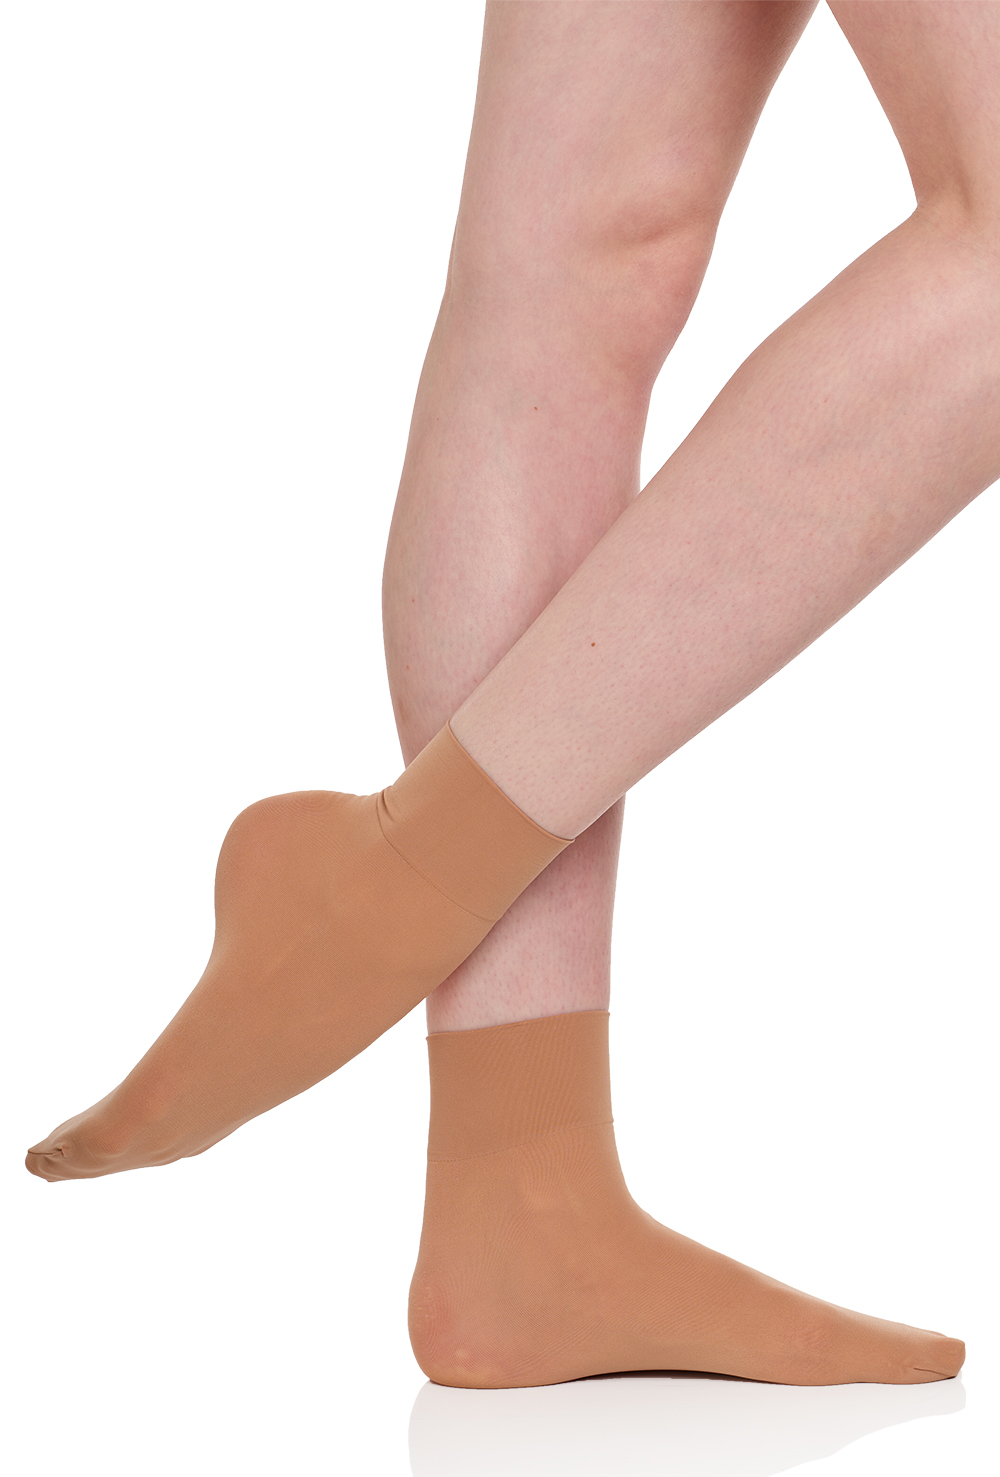 Silky Essential Essential 'No Bag' Ballet Socks - Porselli Dancewear